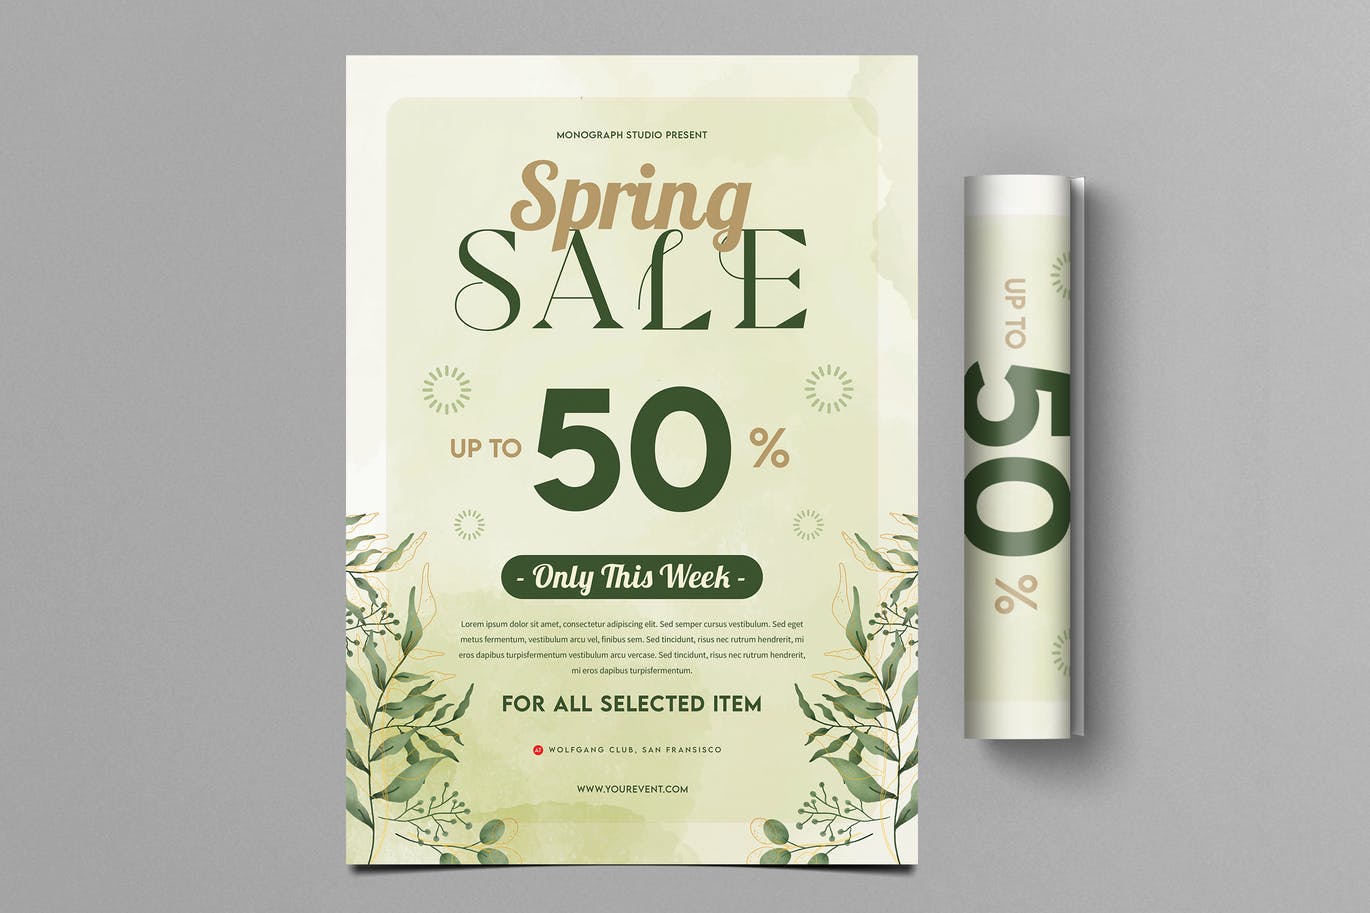 春季销售主题海报设计 Spring Sale Flyer 设计素材 第1张